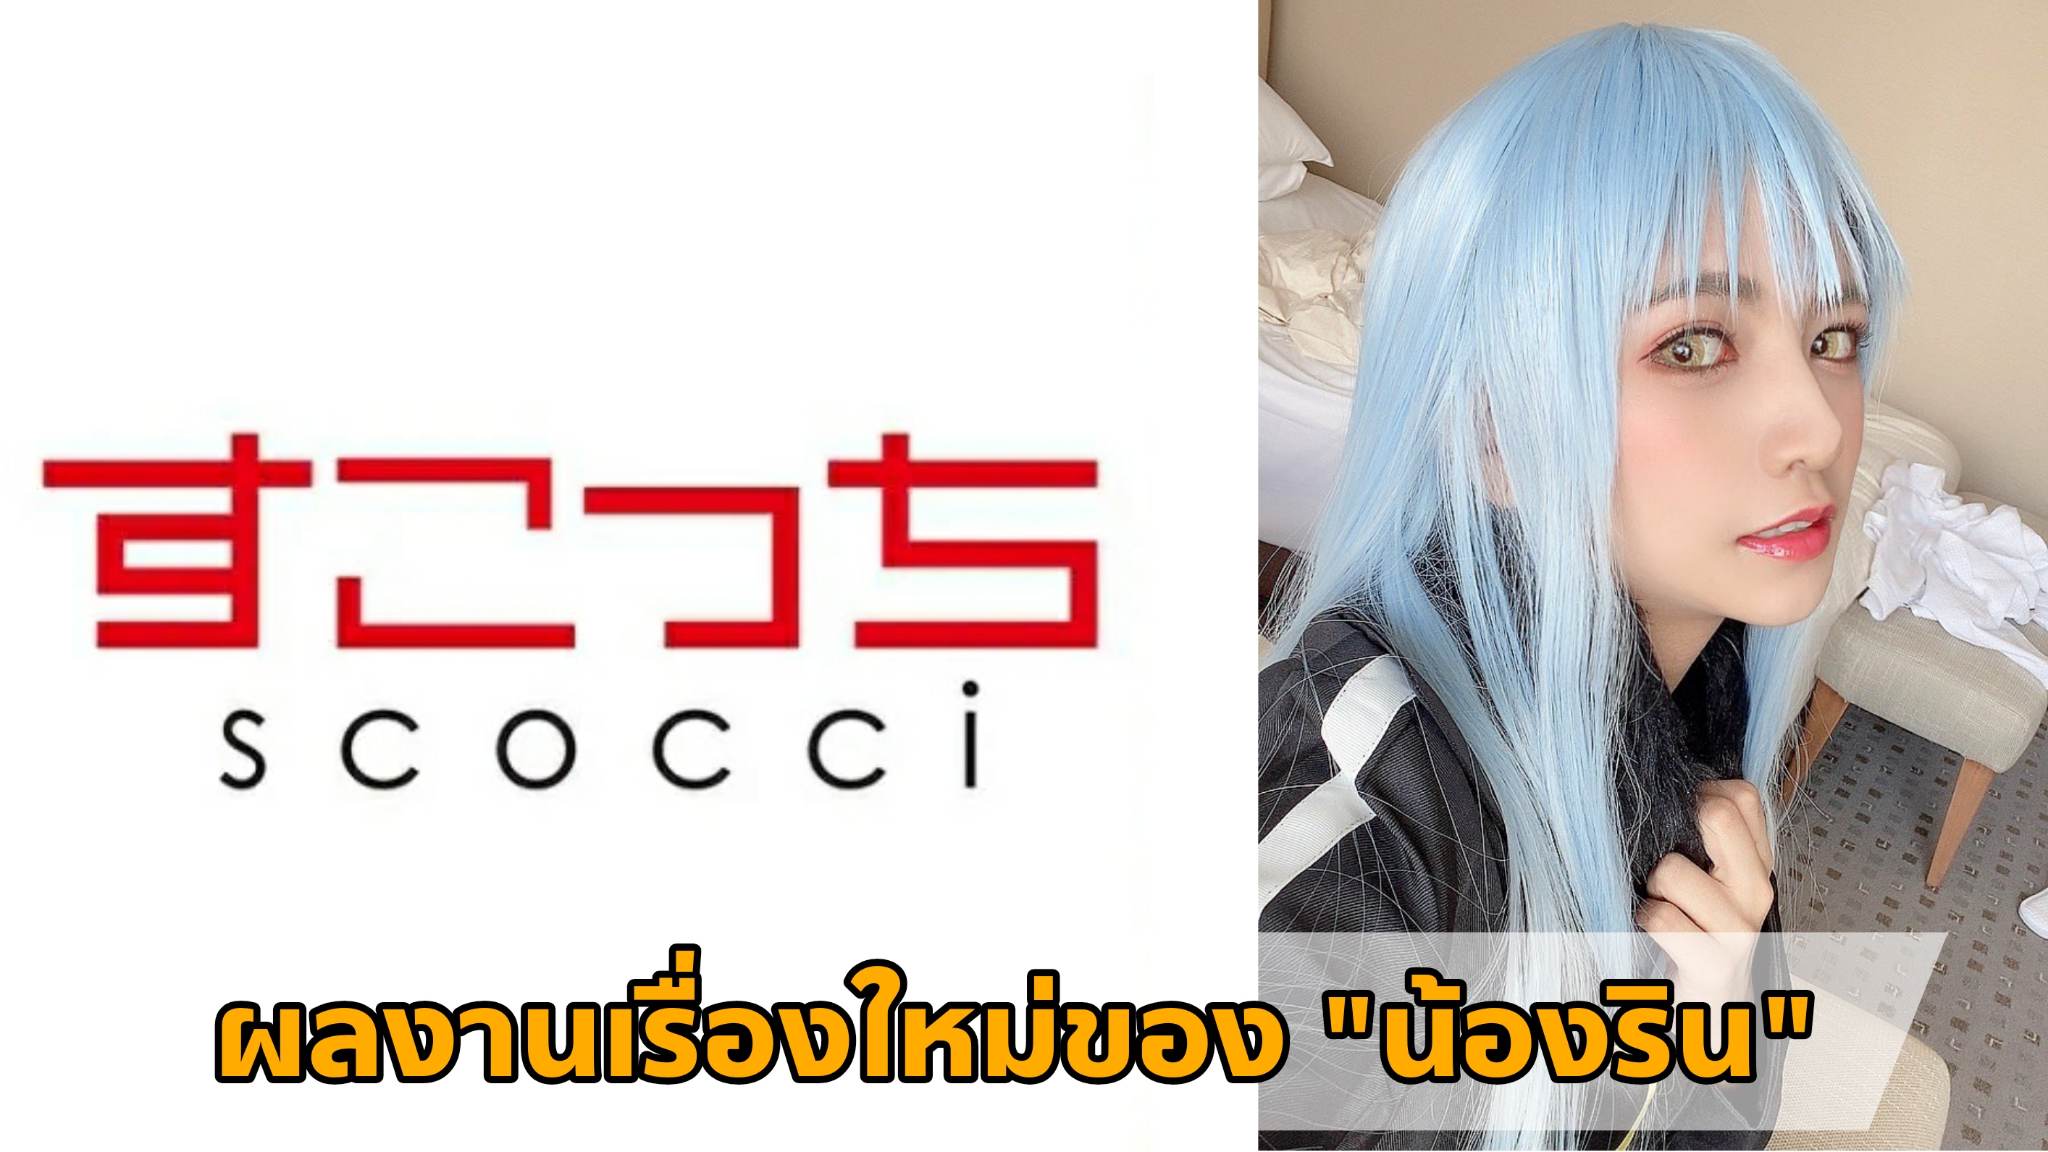 [SCOH-105] ผลงานเรื่องใหม่ของ "น้องริน" (Rin Miyazaki) Cosplay เป็น "ท่านริมุรุ" 24